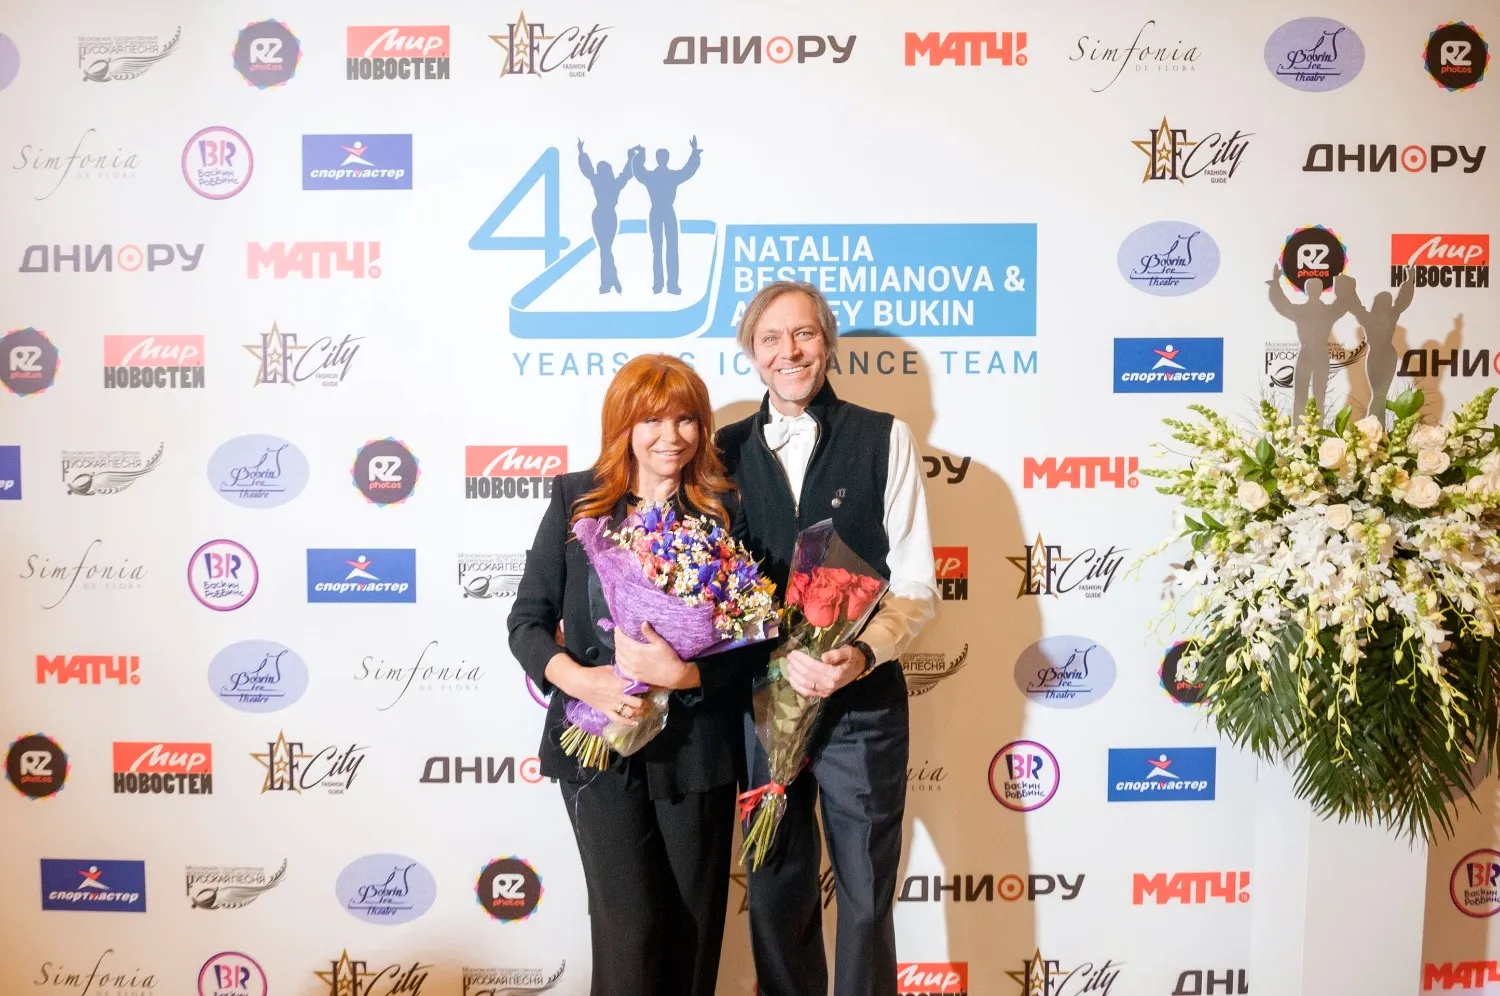 Андрей Букин и Наталья Бестемьянова 40 лет вместе